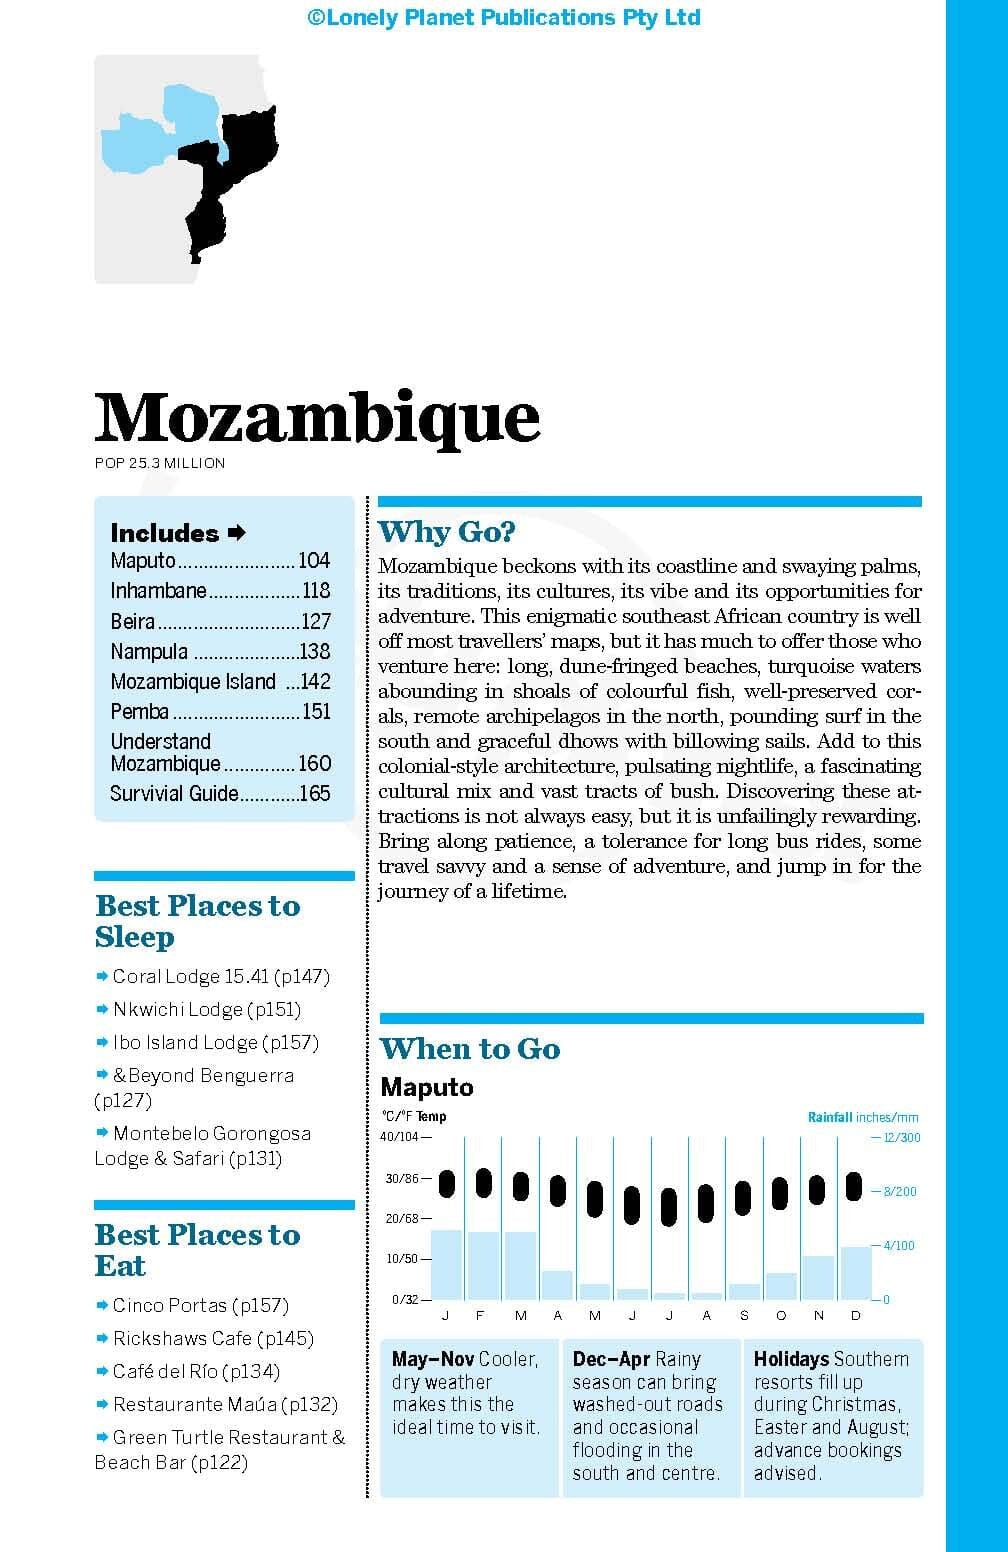 Guide de voyage (en anglais) - Zambia, Mozambique & Malawi | Lonely Planet guide de voyage Lonely Planet EN 